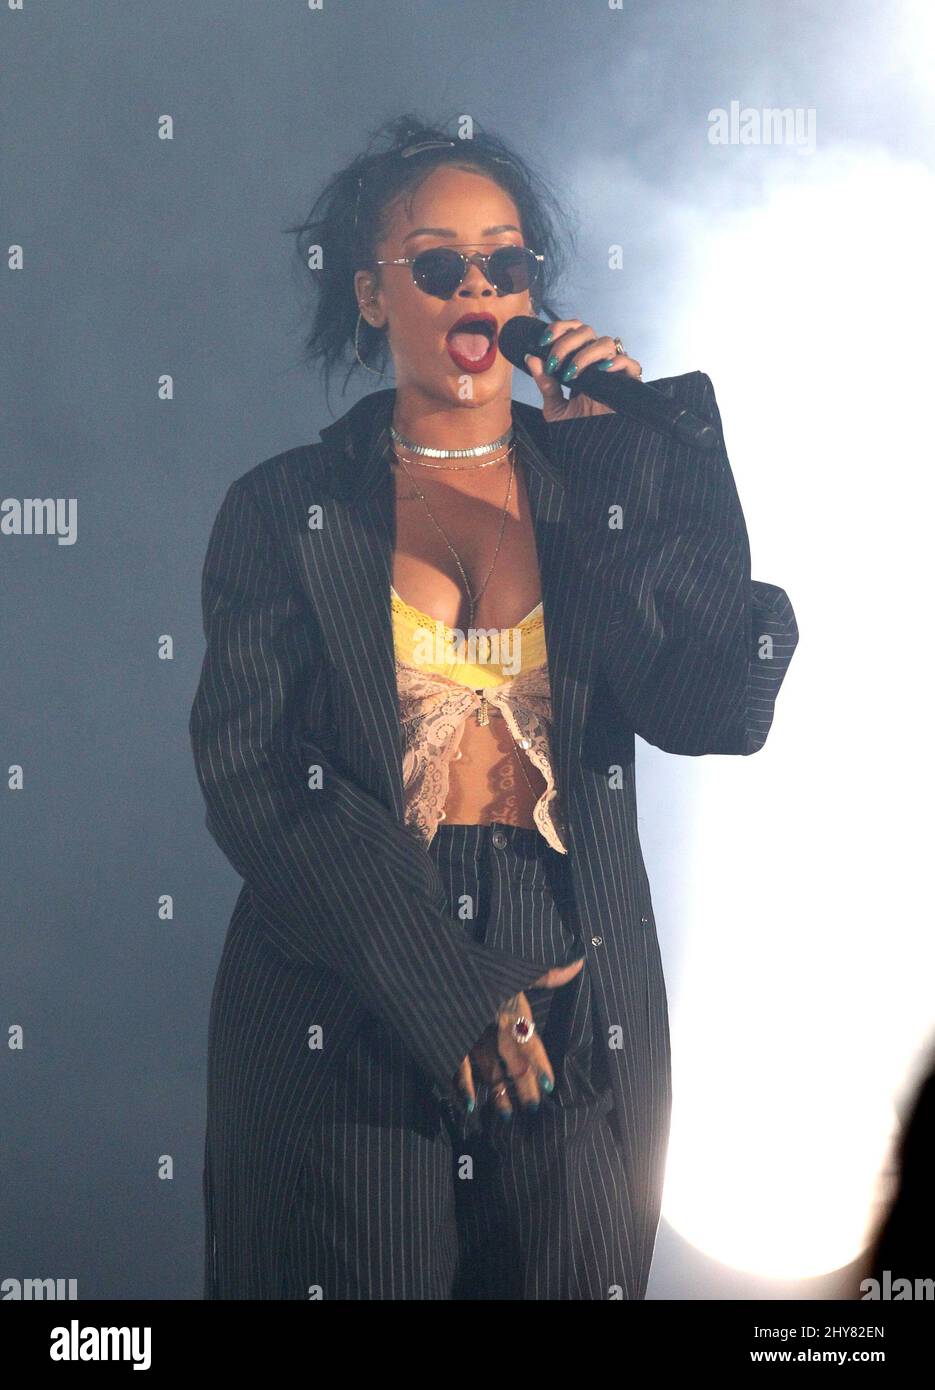 La terza edizione del Rihanna CBS radio 'We Can Survive' 2015 si tiene all'Hollywood Bowl Foto Stock